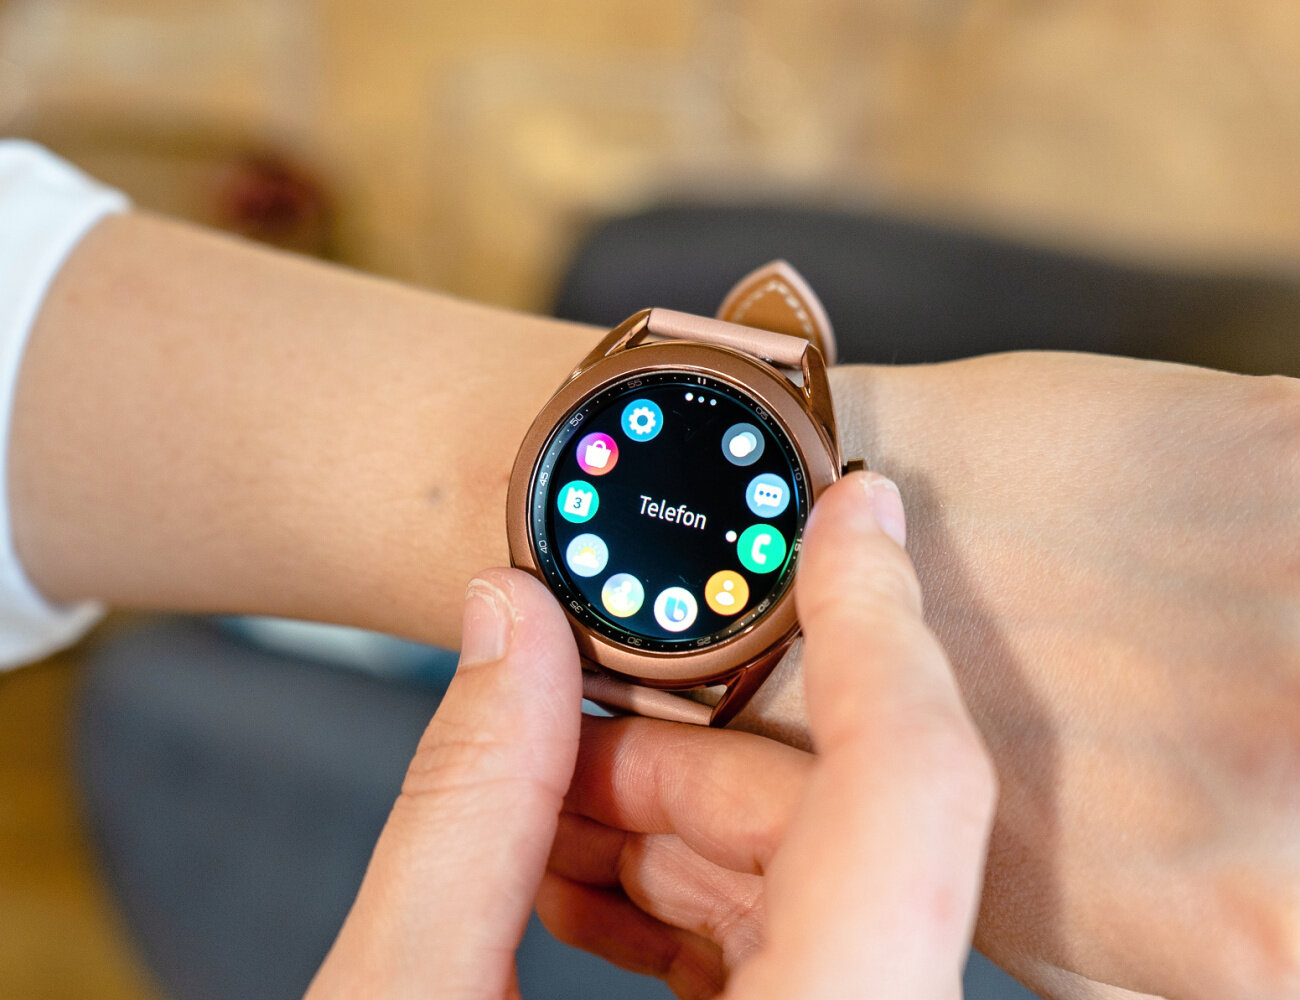 Chytré hodinky Galaxy Watch 3 jsou tenčí a menší, přitom mají větší displej